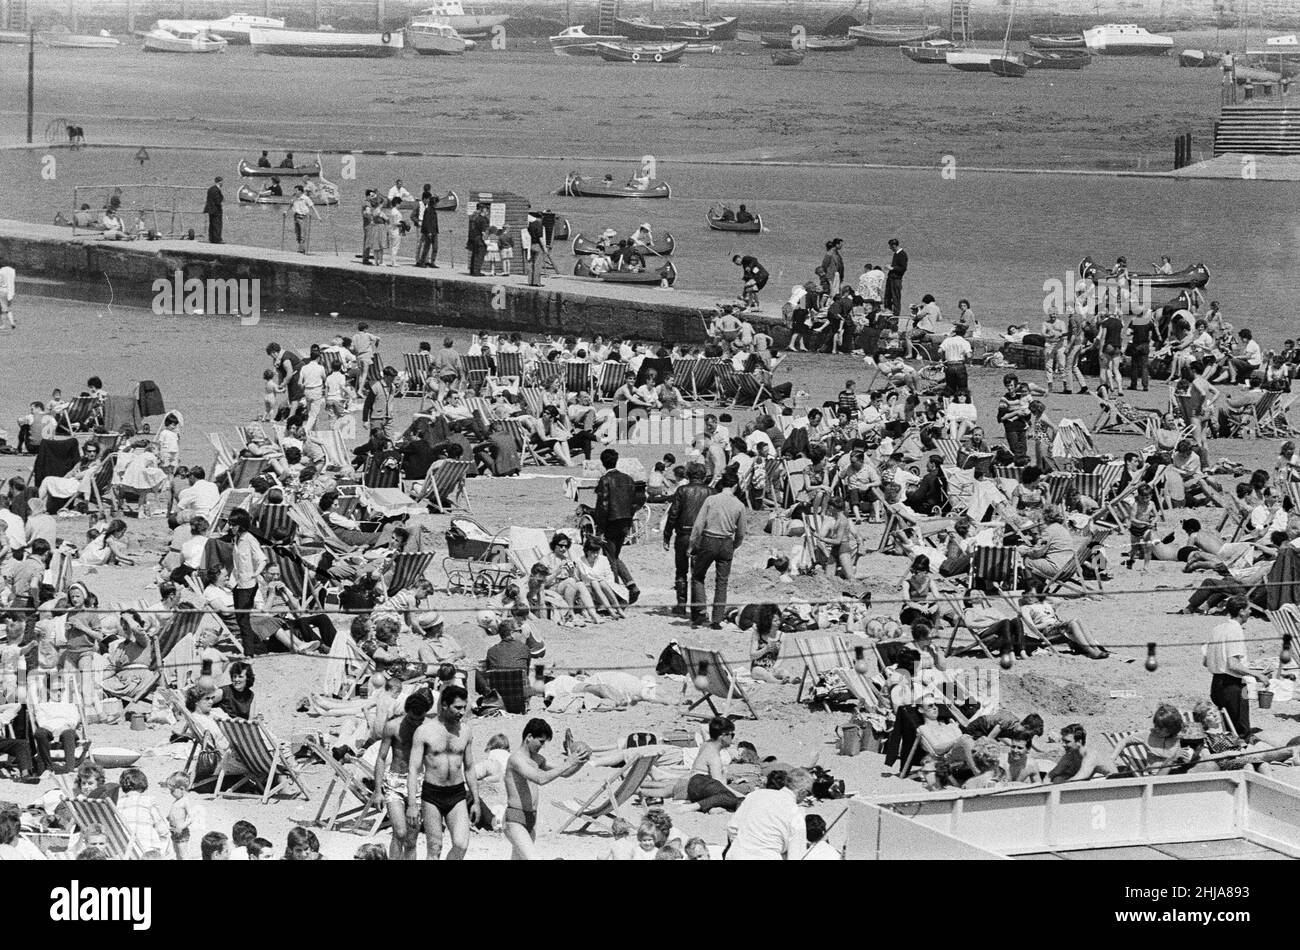 Mods gegen Rockers. Bild zeigt die Szene in Margate, North East Kent im Mai 1964. Mods und Rockers mischen sich mit den Urlaubern, die den Tag in ihren Liegestühlen genießen. Bild aufgenommen am 17th. Mai 1964 Stockfoto